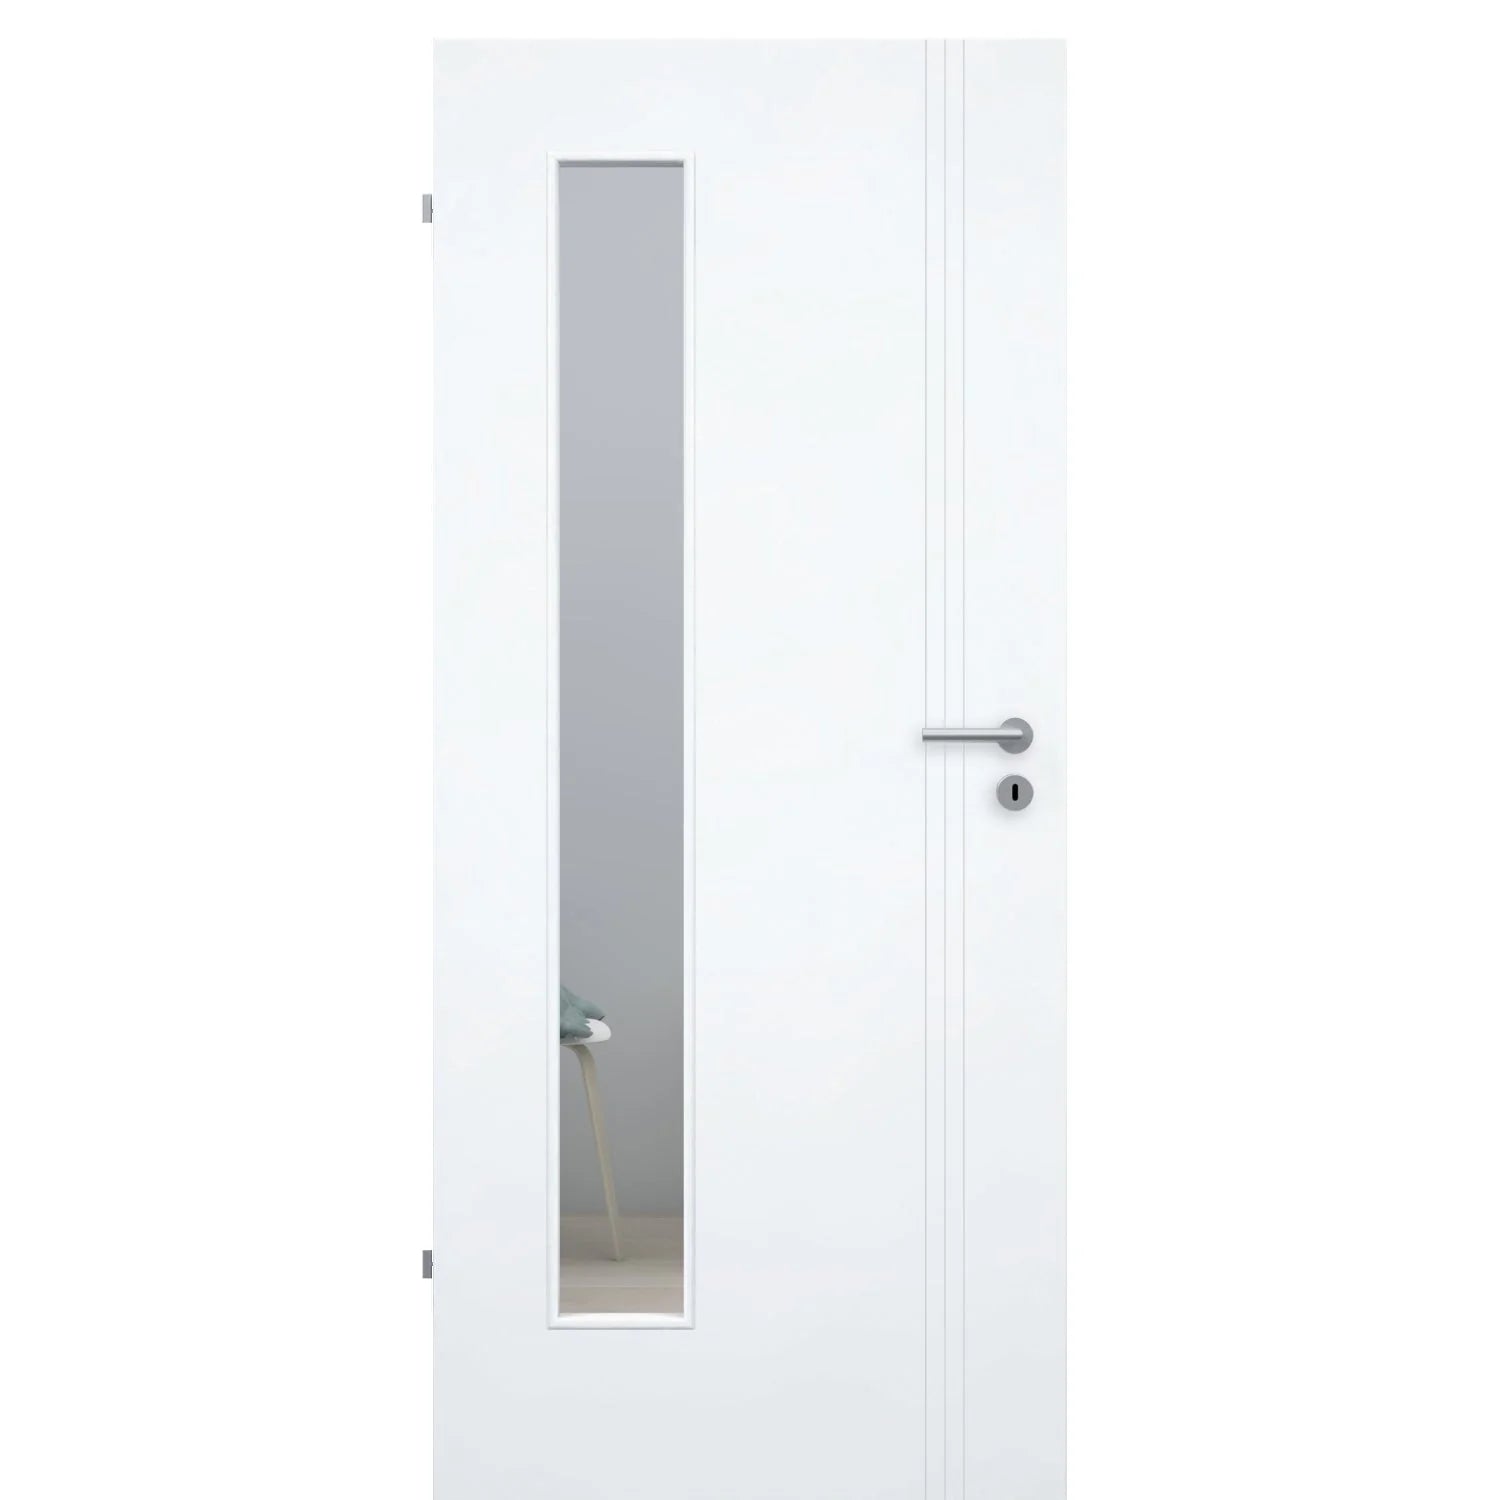 Zimmertür mit Lichtausschnitt brillant-weiß 3 Rillen aufrecht Schlossseite Designkante - Modell Designtür VS33LAB